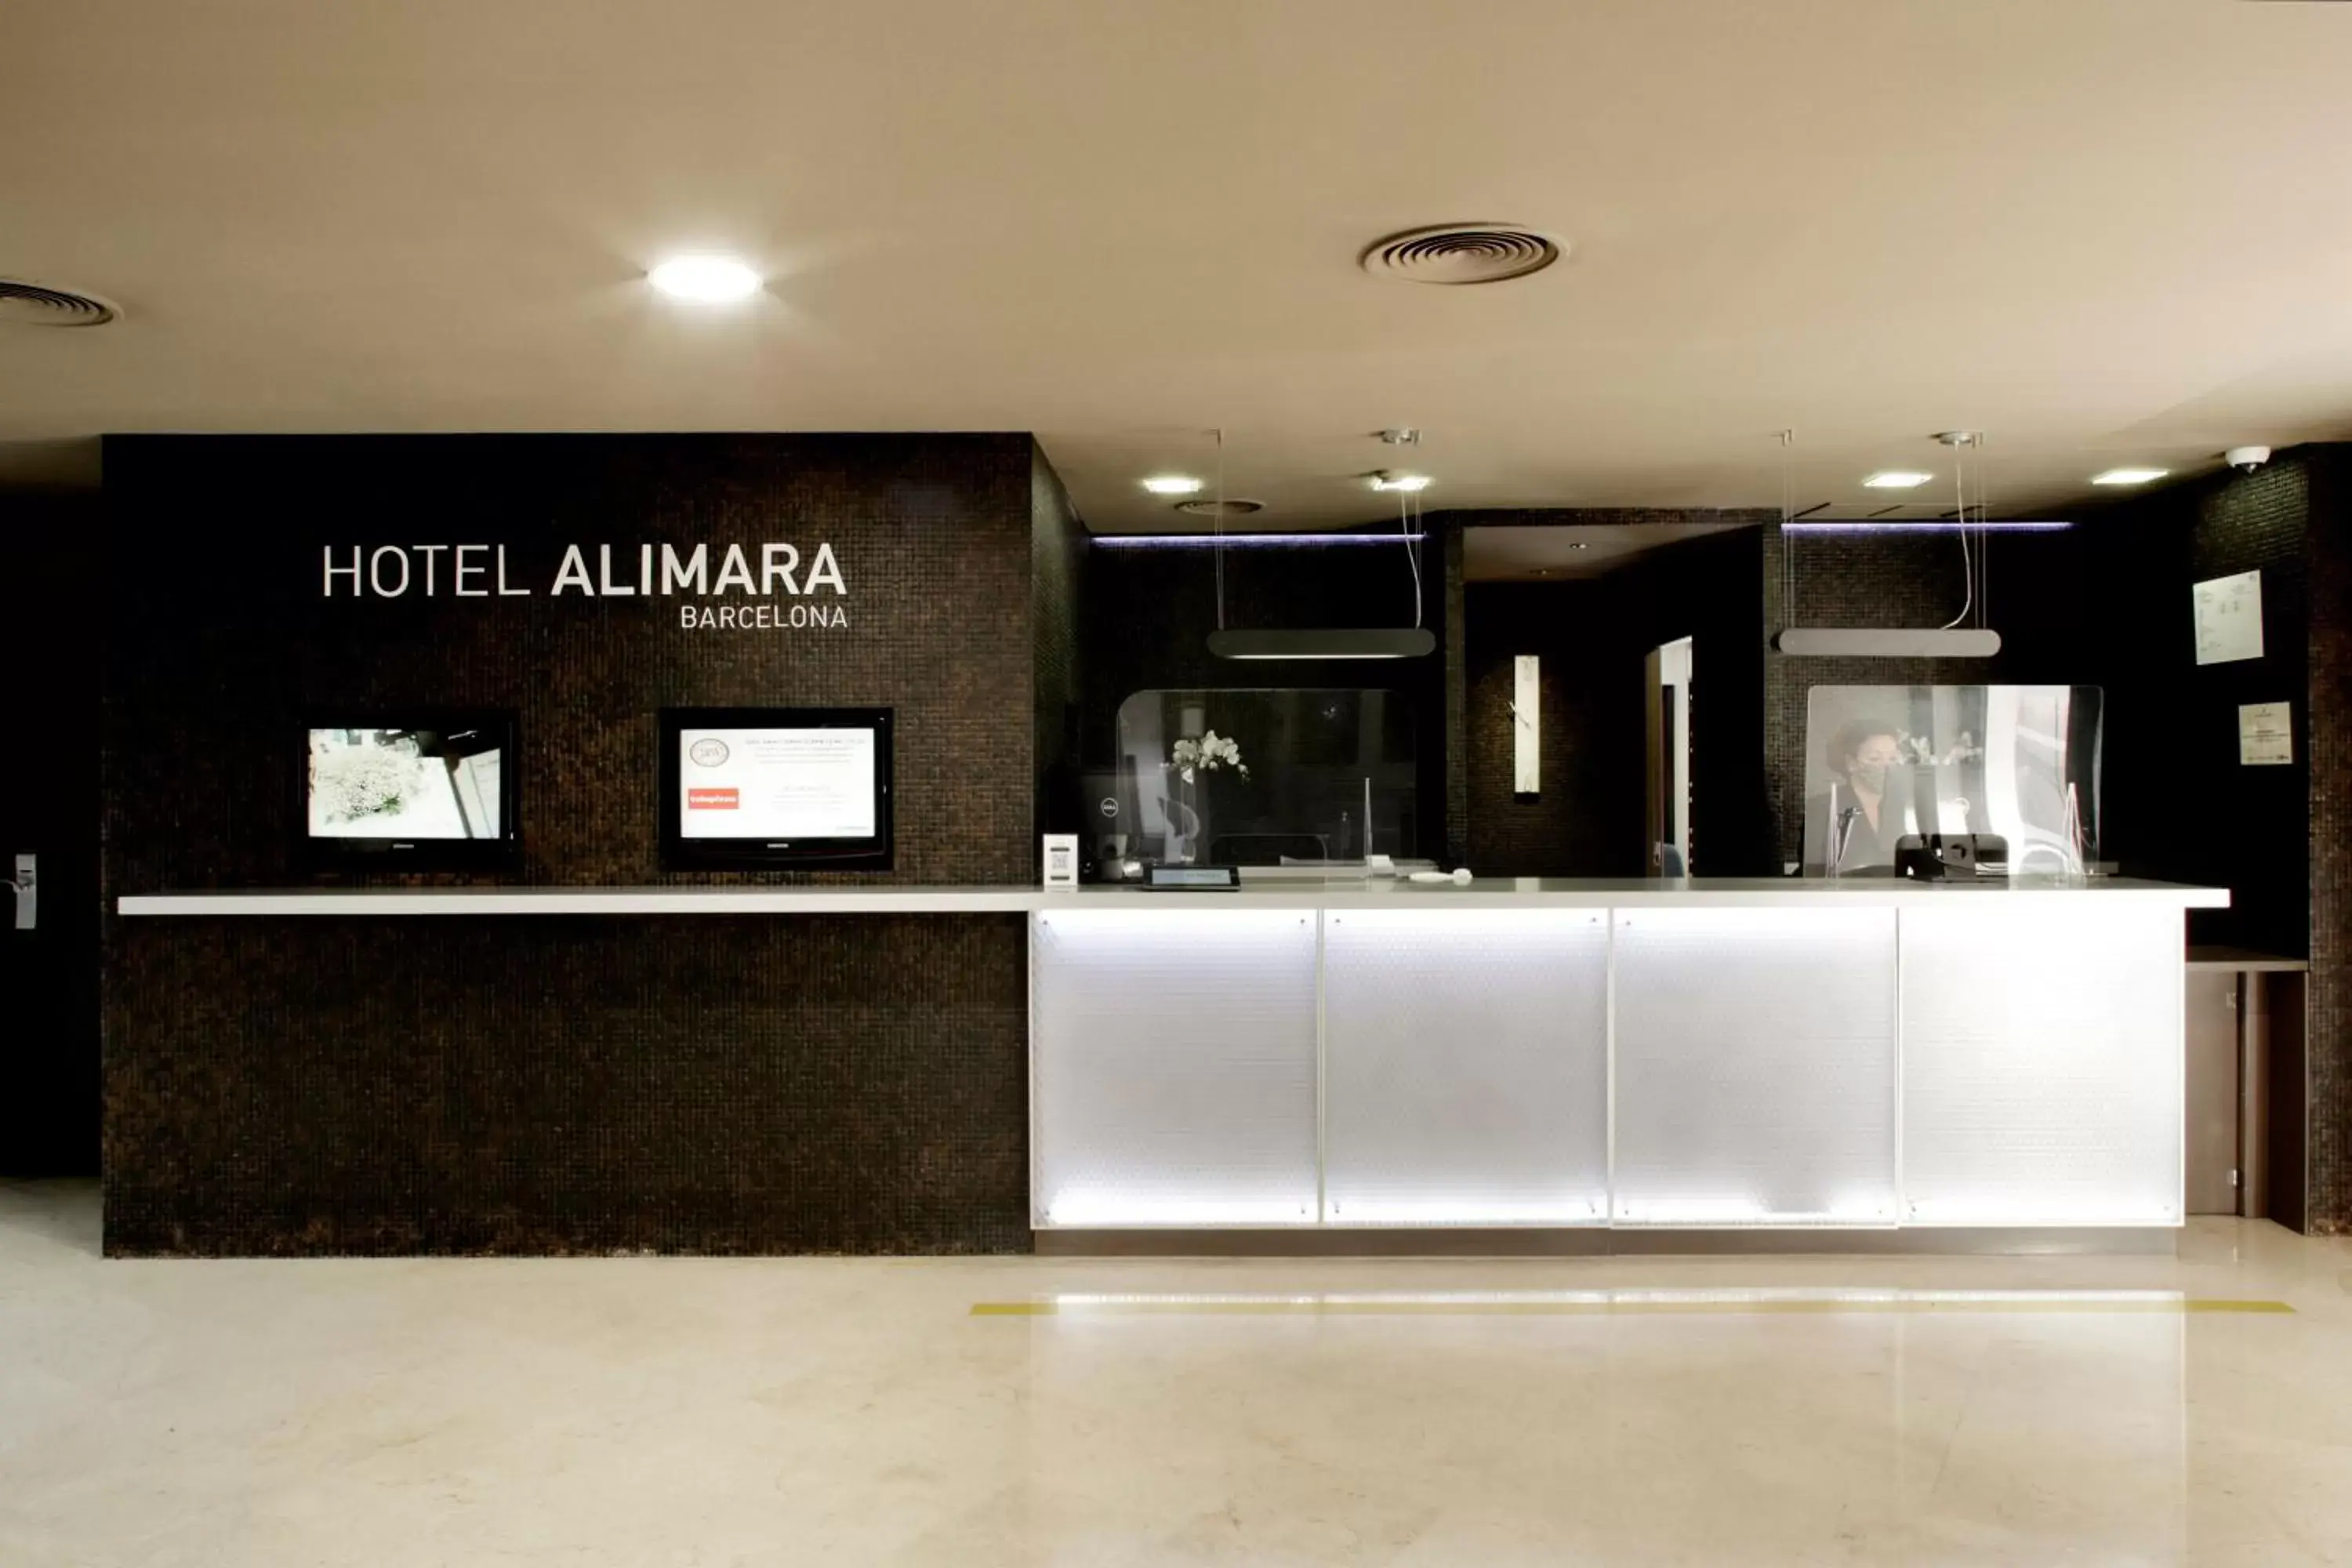 Lobby or reception in Hotel Alimara